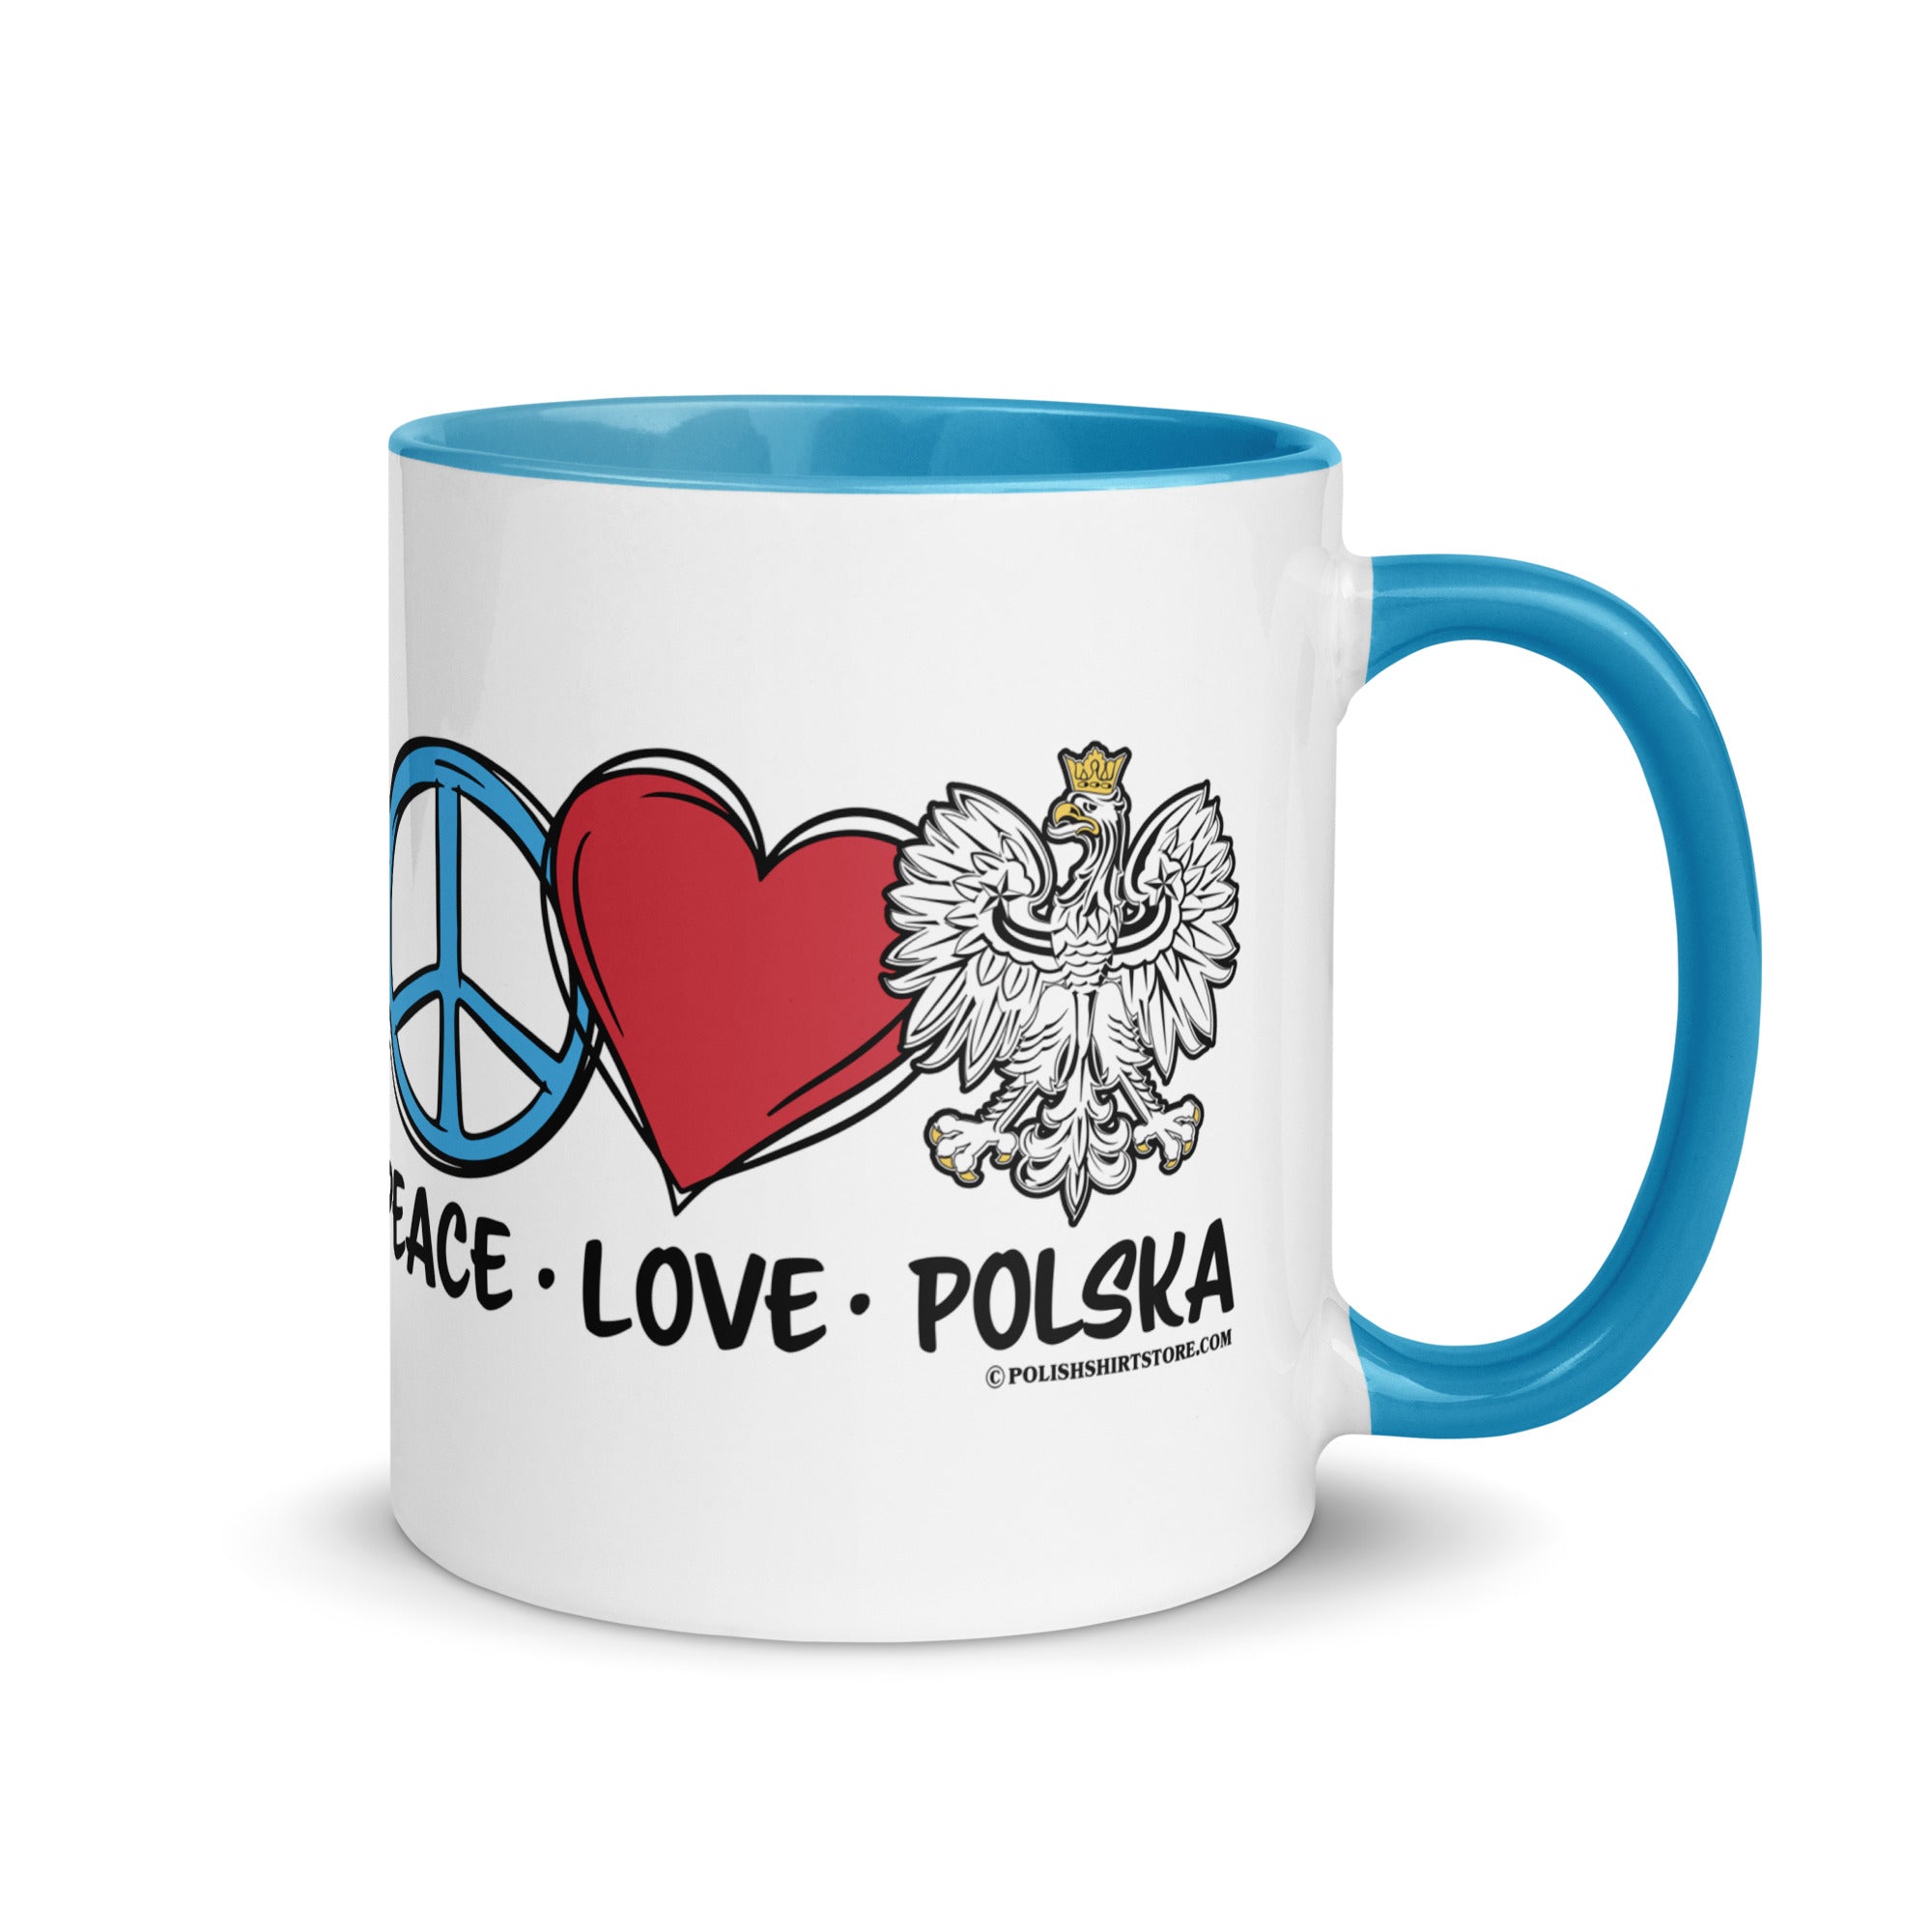 Peace Love Polska Coffee Mug with Color Inside  Polish Shirt Store Blue 11 oz 